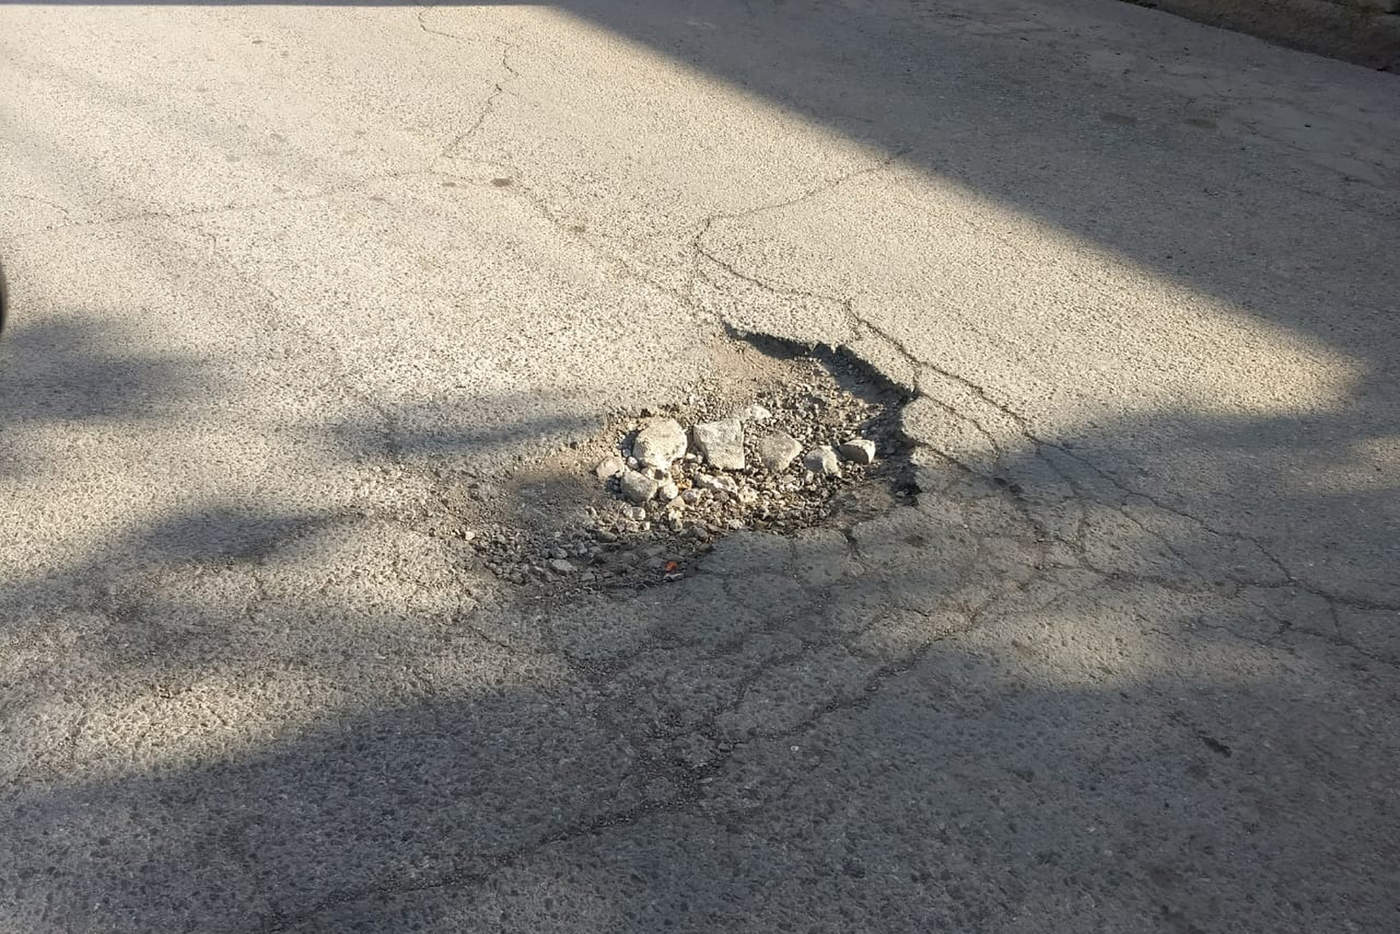 Según vecinos, son meses los que tiene este desperfecto en el asfalto sin que ninguna autoridad haga algo al respecto. (EL SIGLO DE TORREÓN)